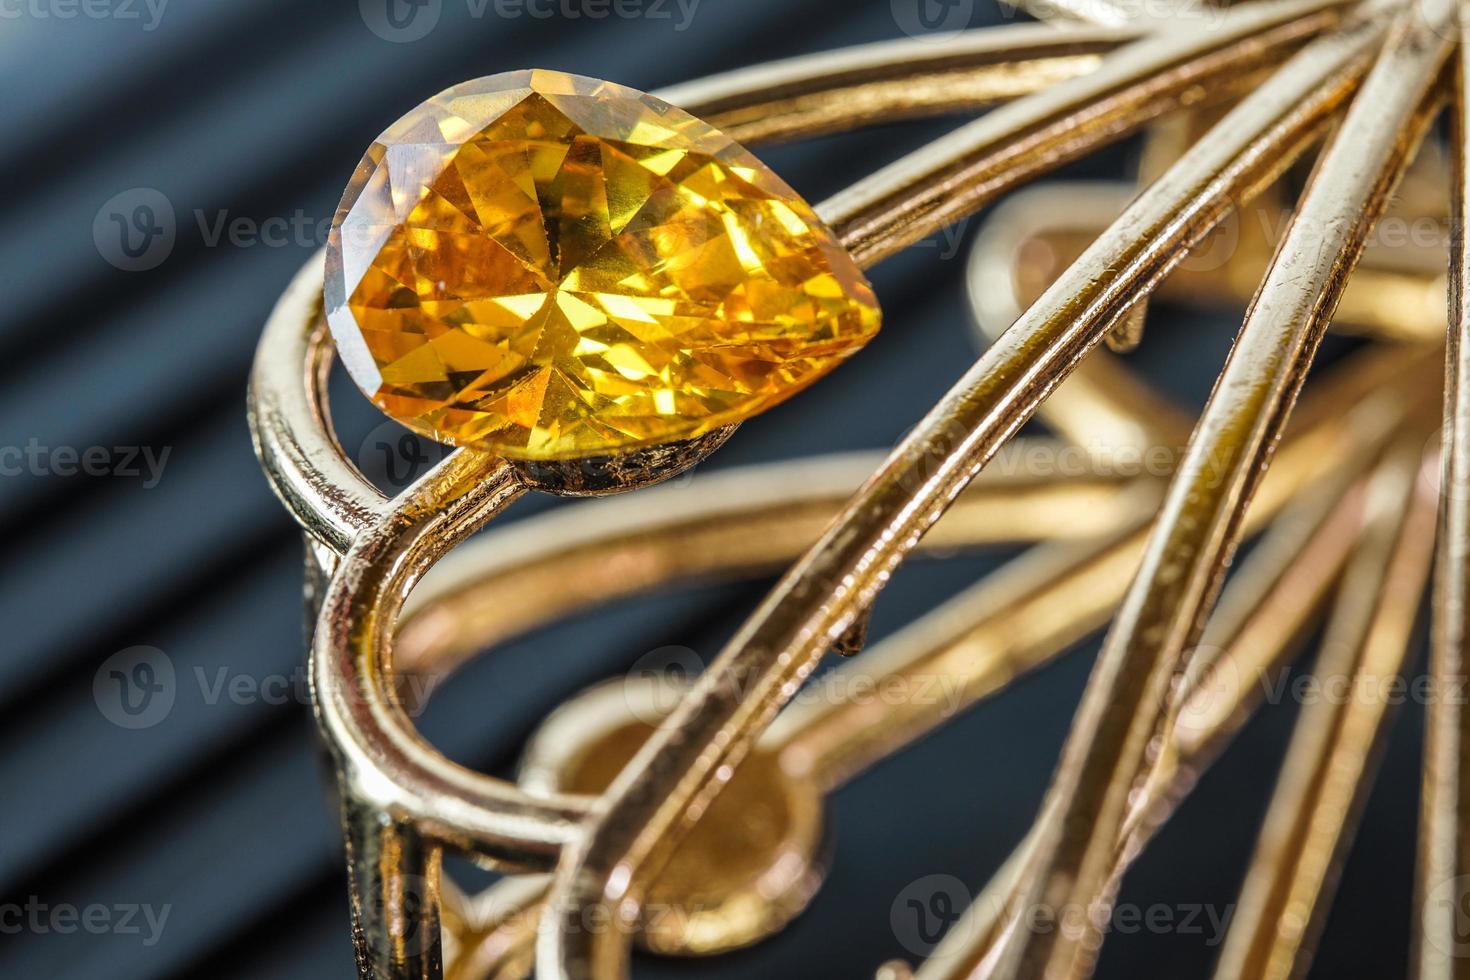 pedra preciosa natural amarela, gemas ou gemas em ouro brilhante foto